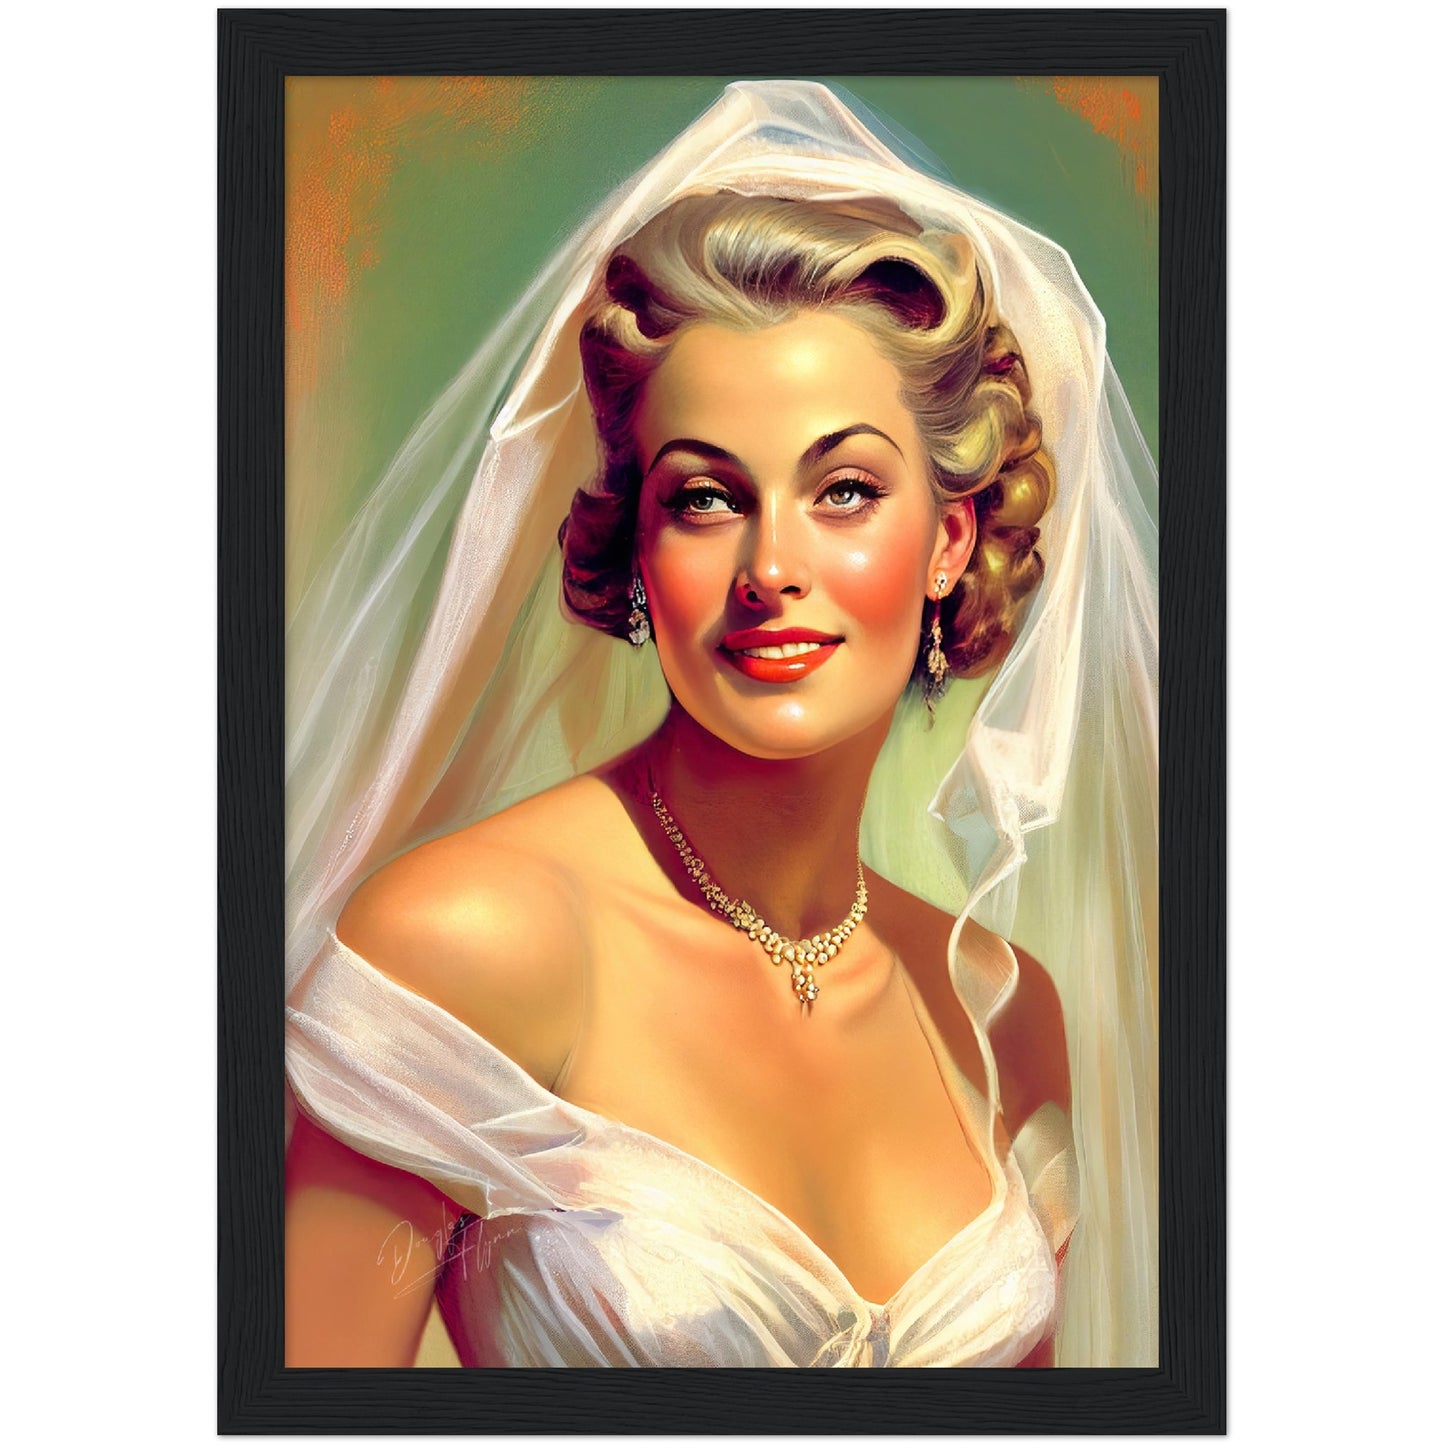 »Lace wedding dreams« retro poster